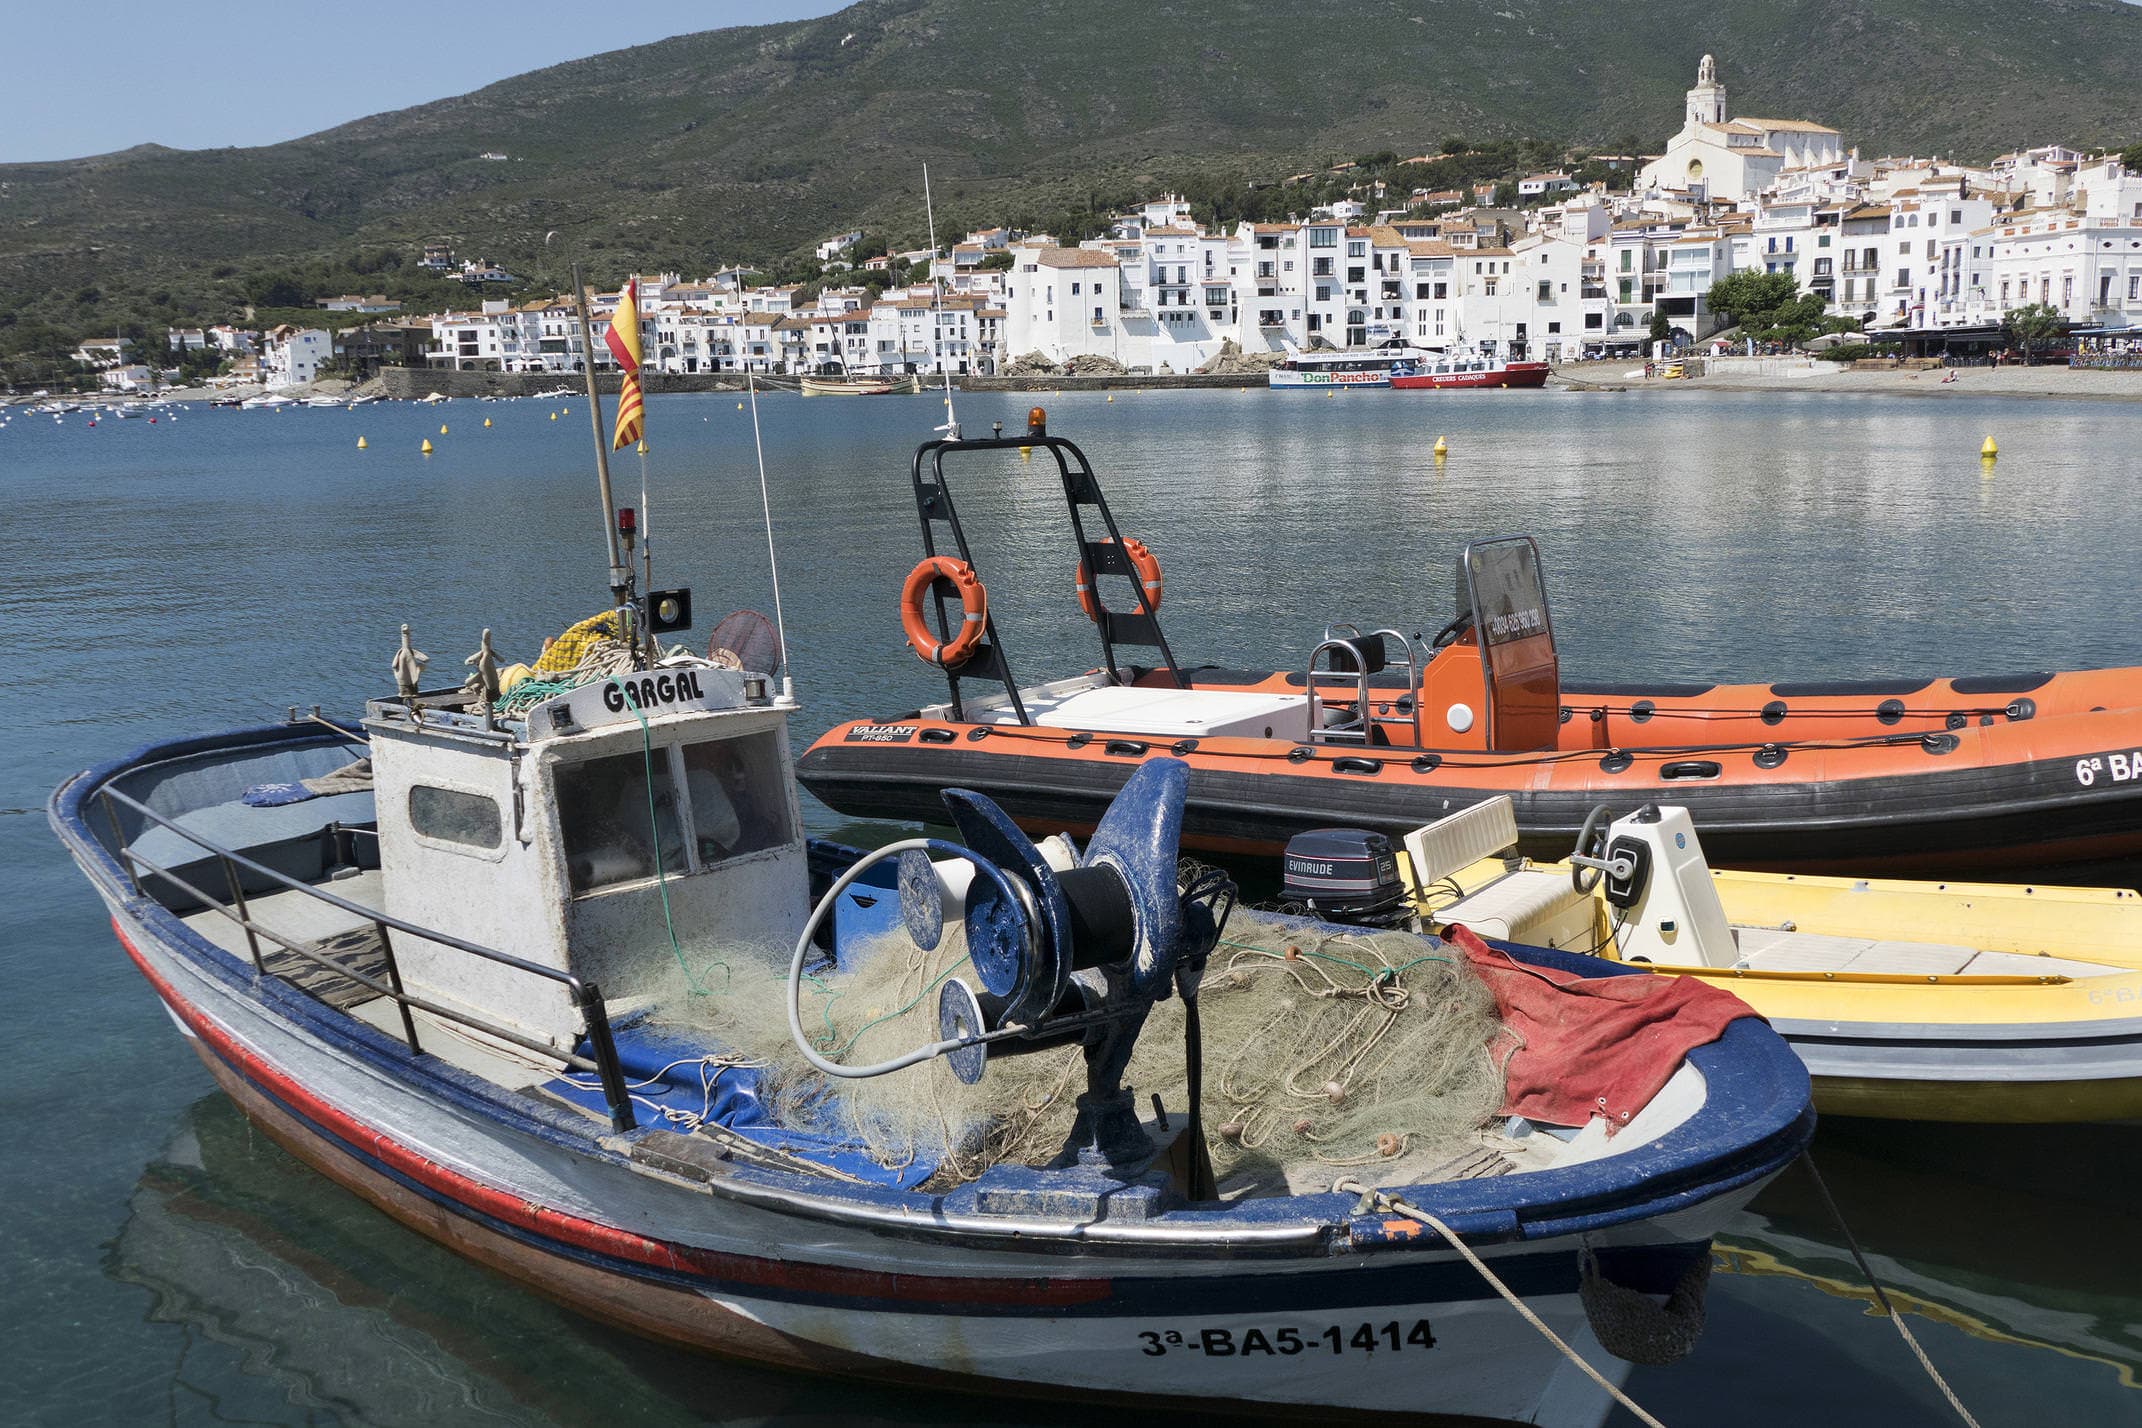 Spain catalonia cadaques fishing c diego pura aventura